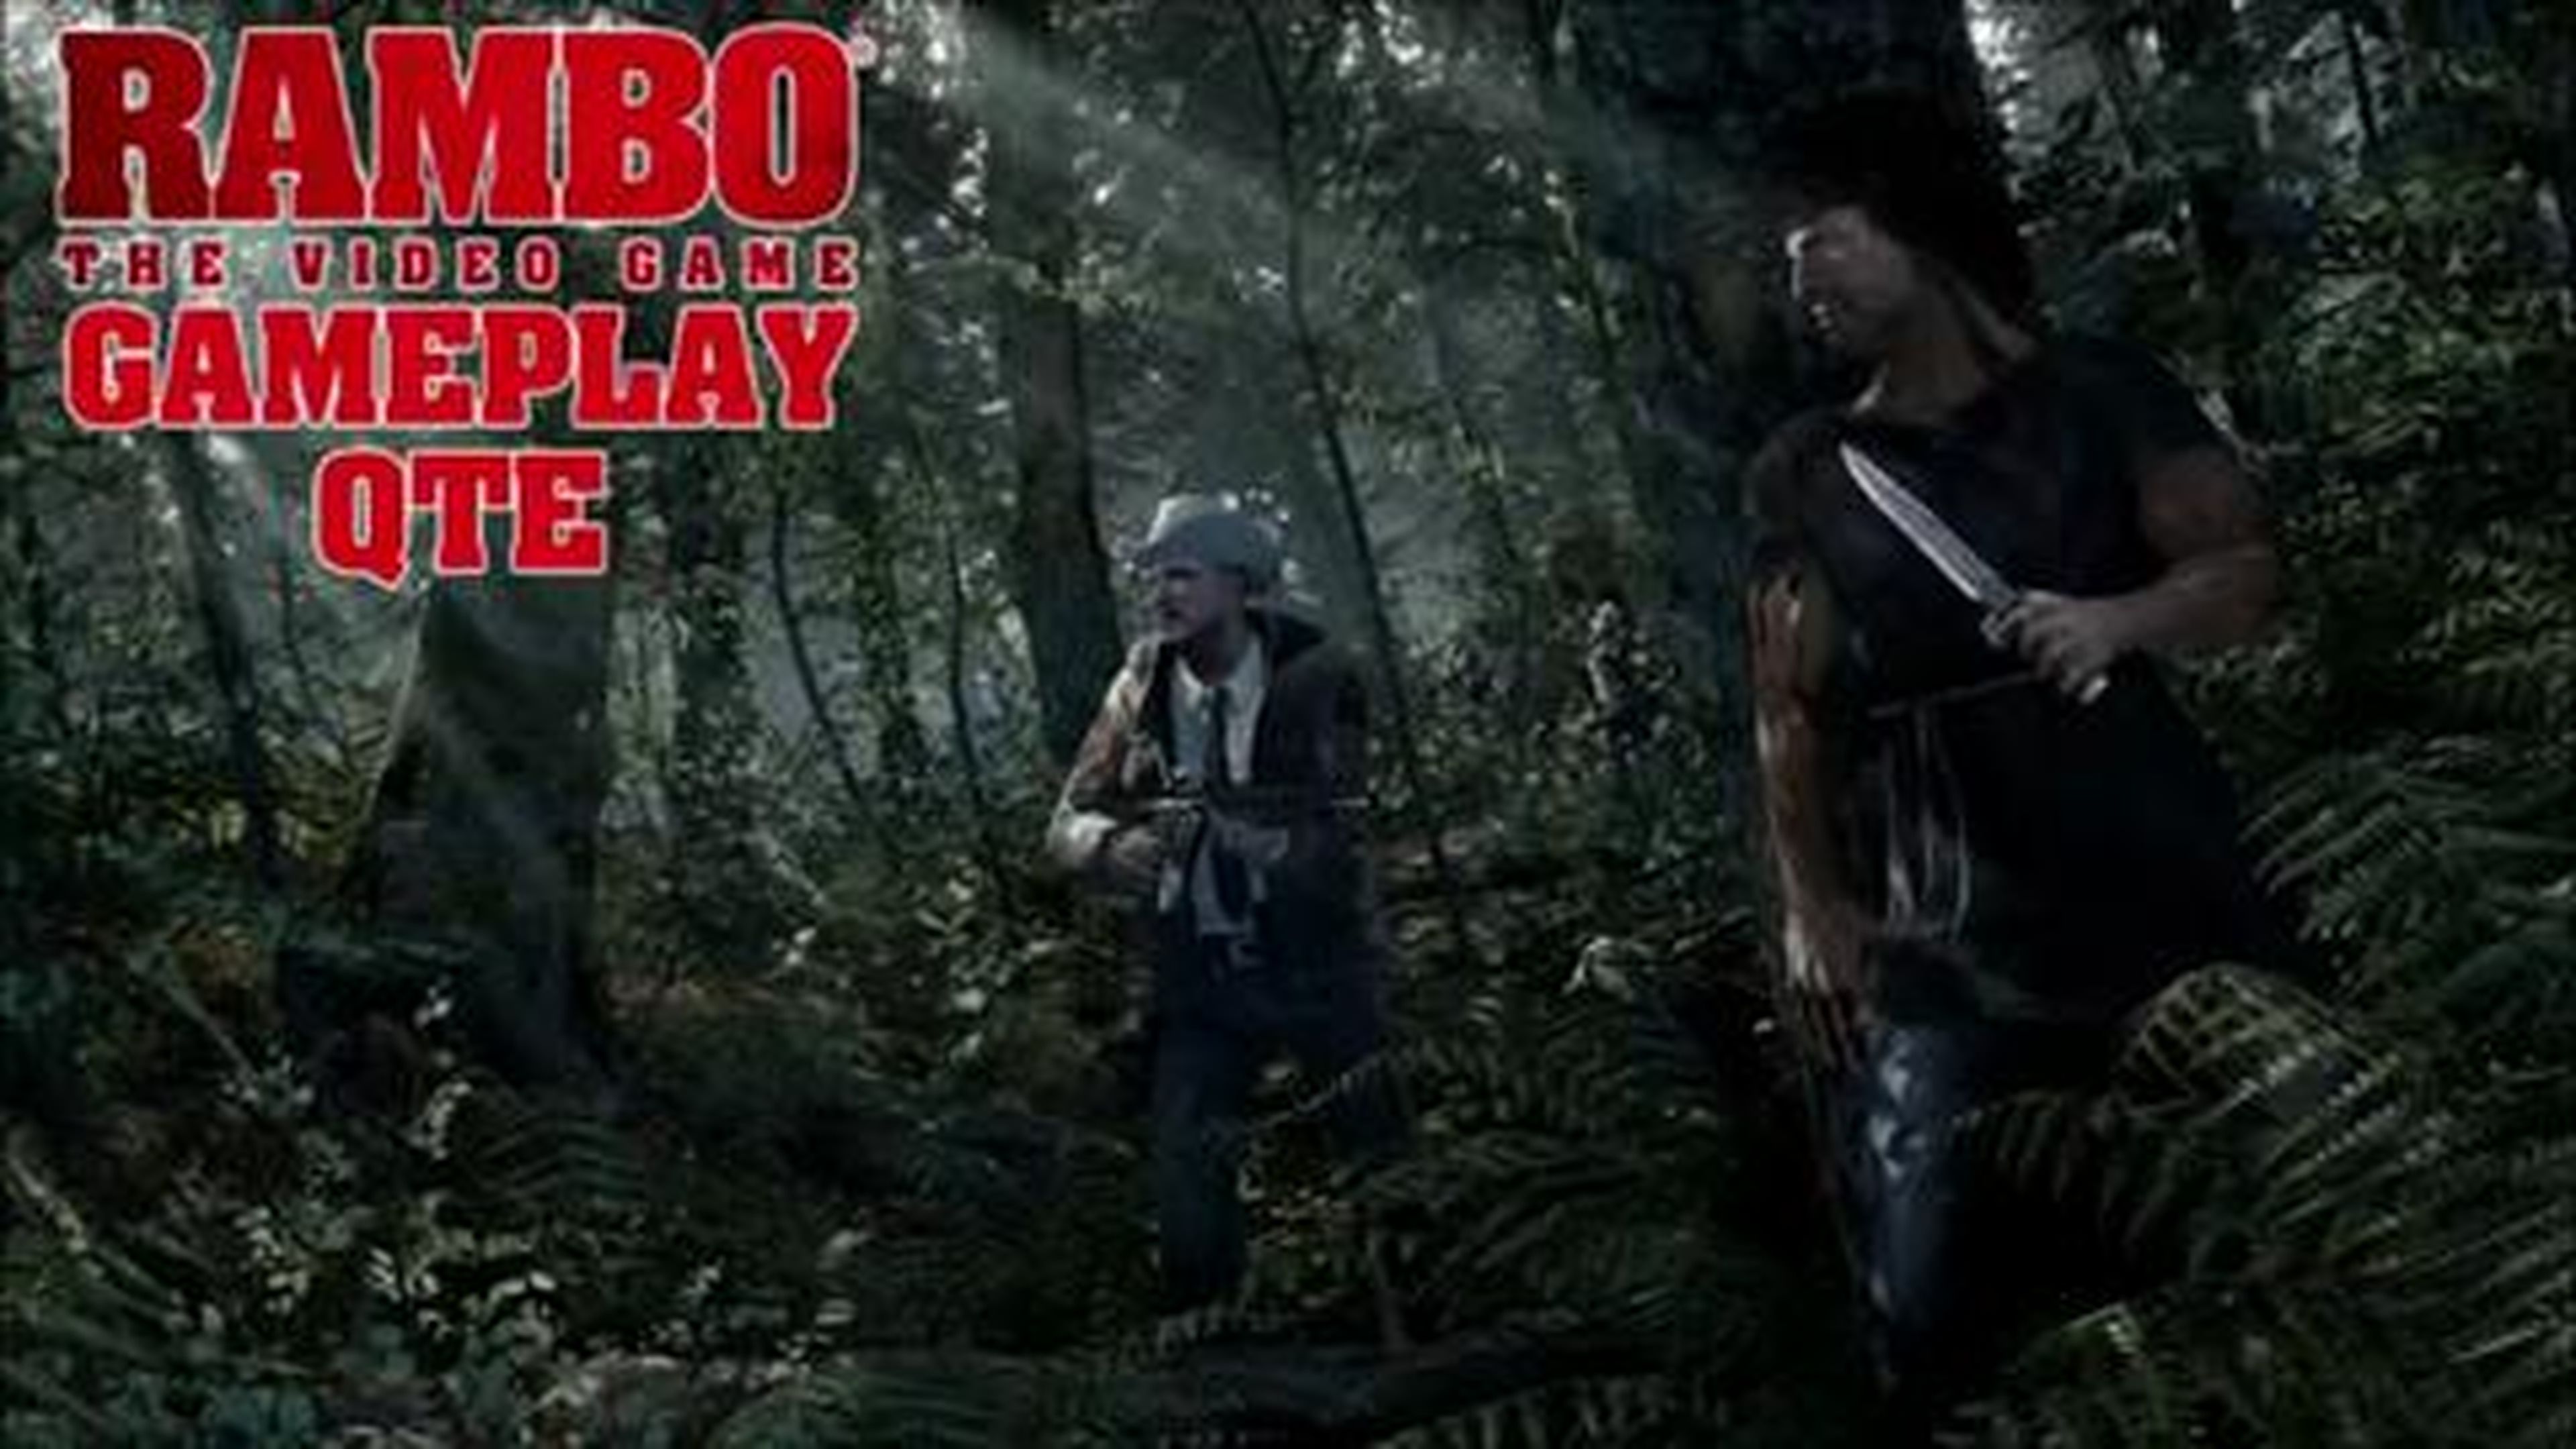 Rambo The Video Game Gameplay